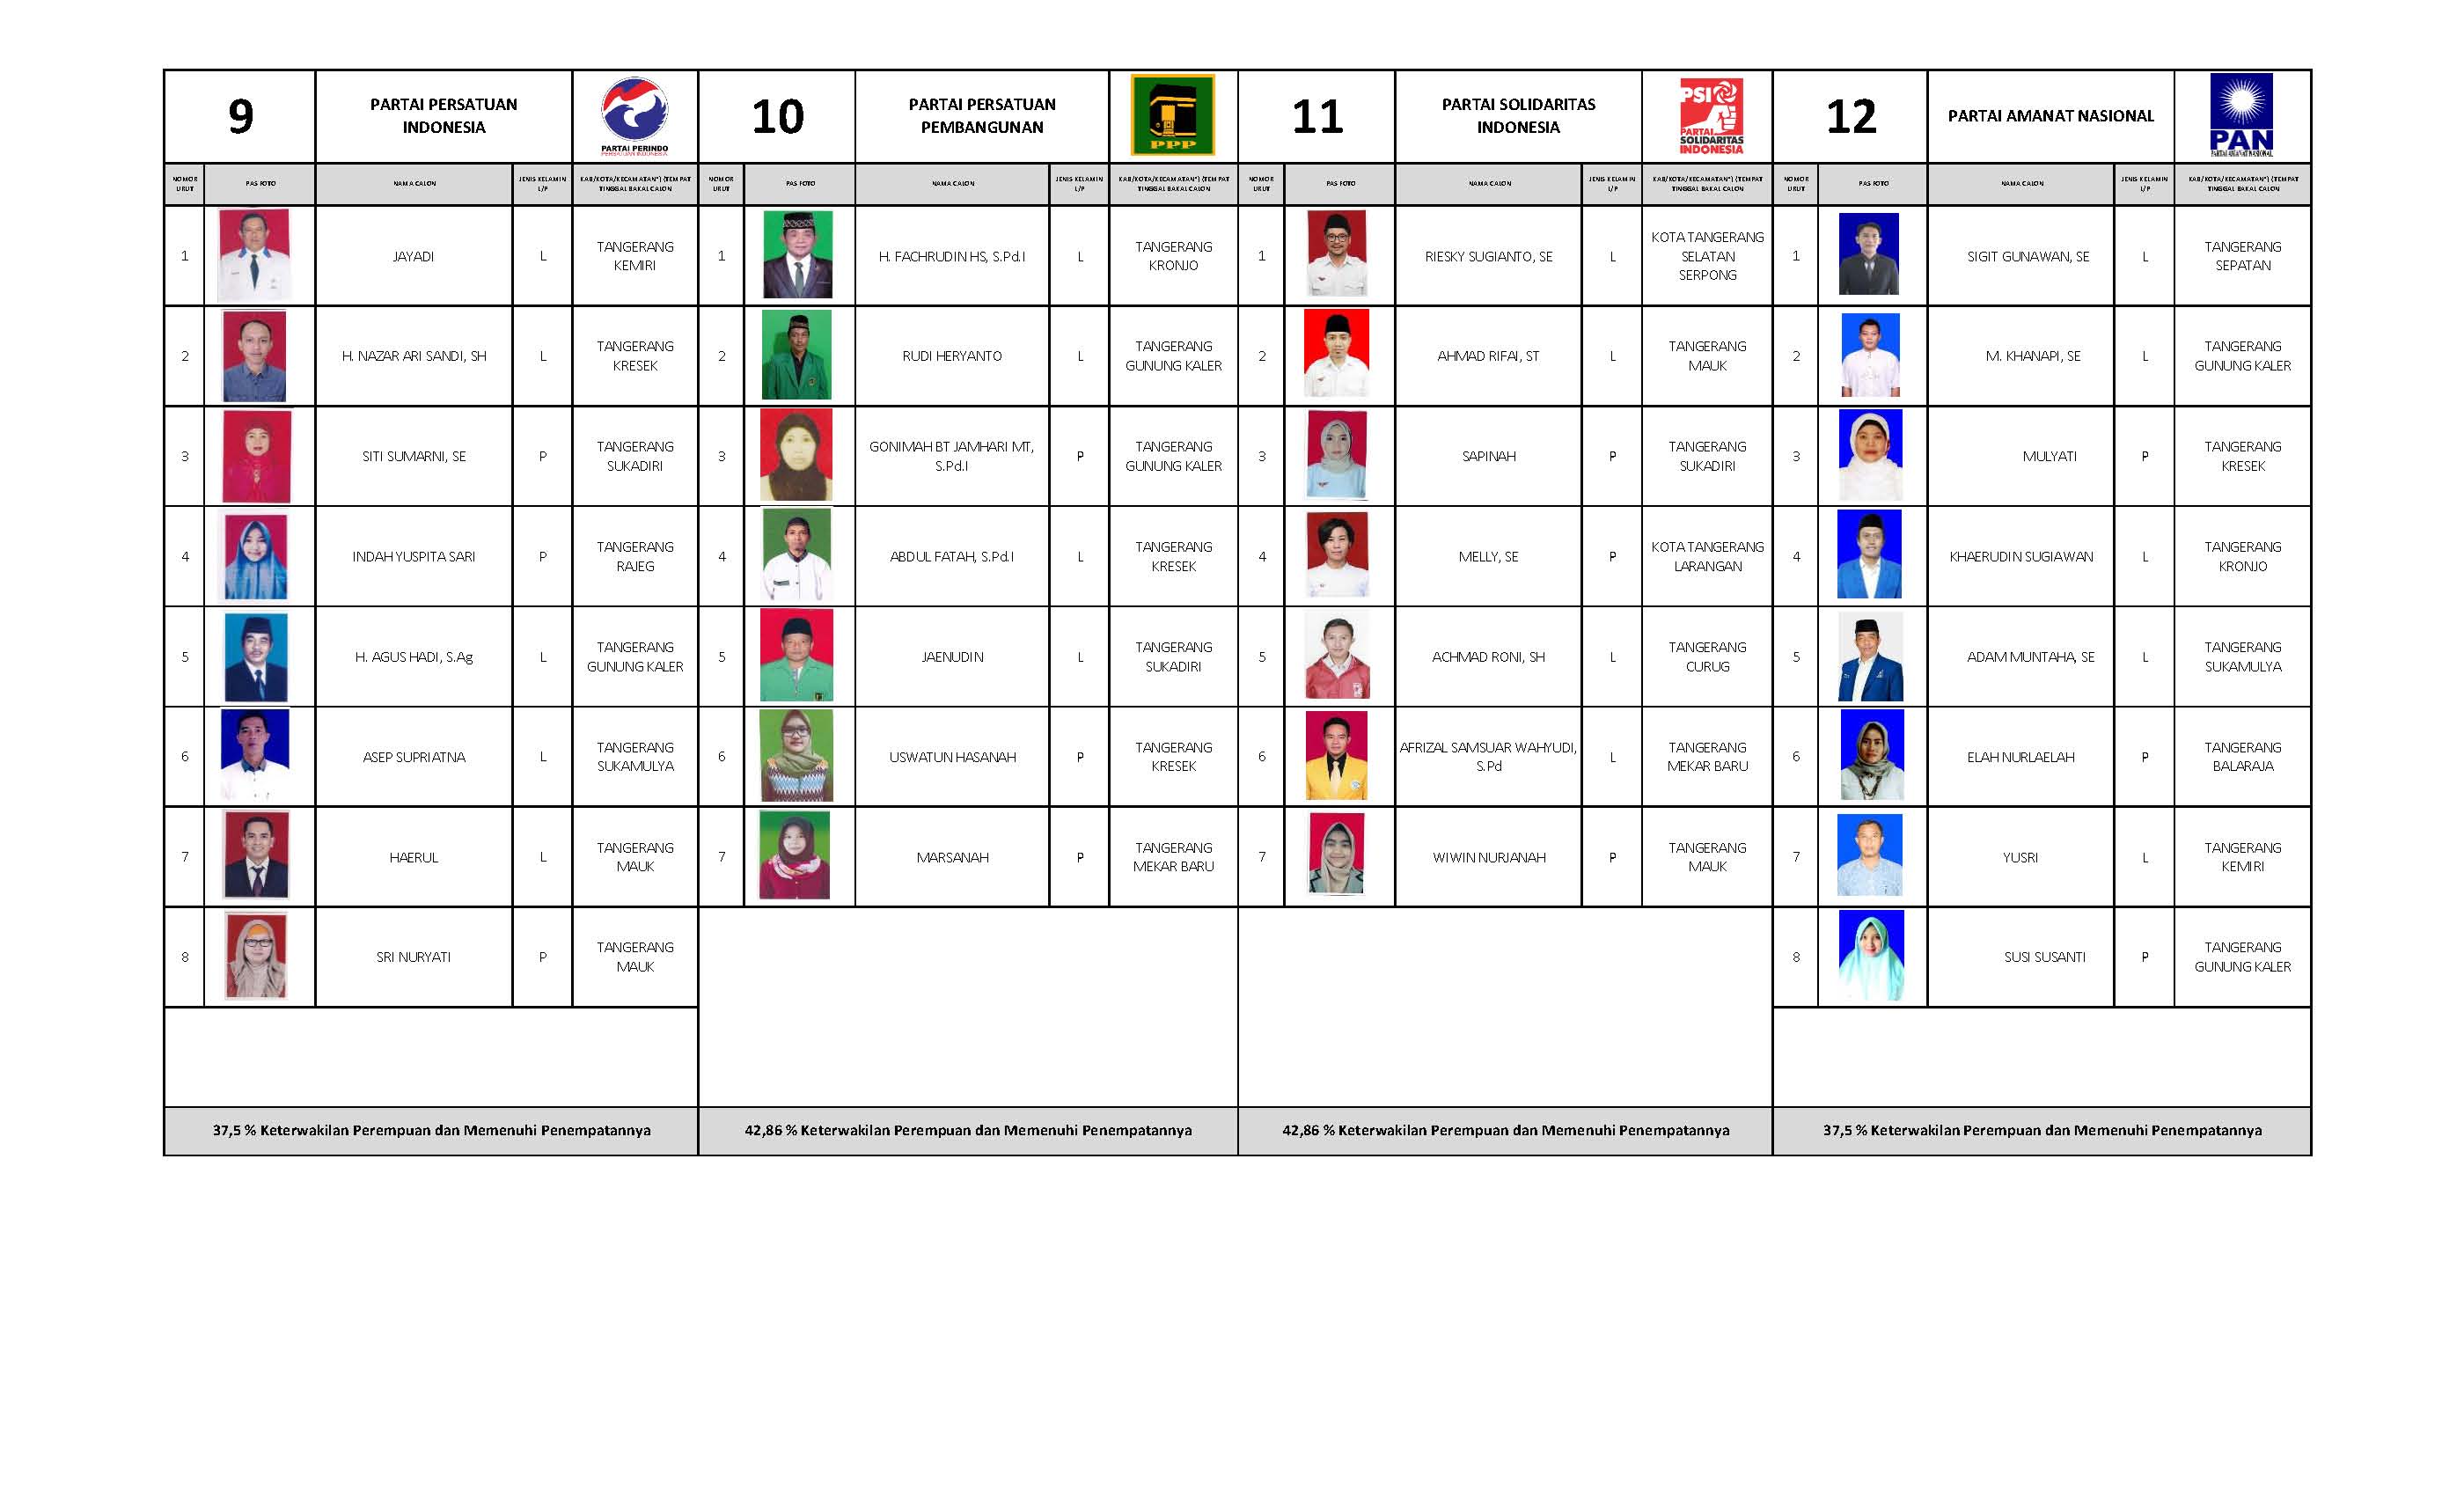 DCT Pemilu 2019 Kab Tangerang Page 01